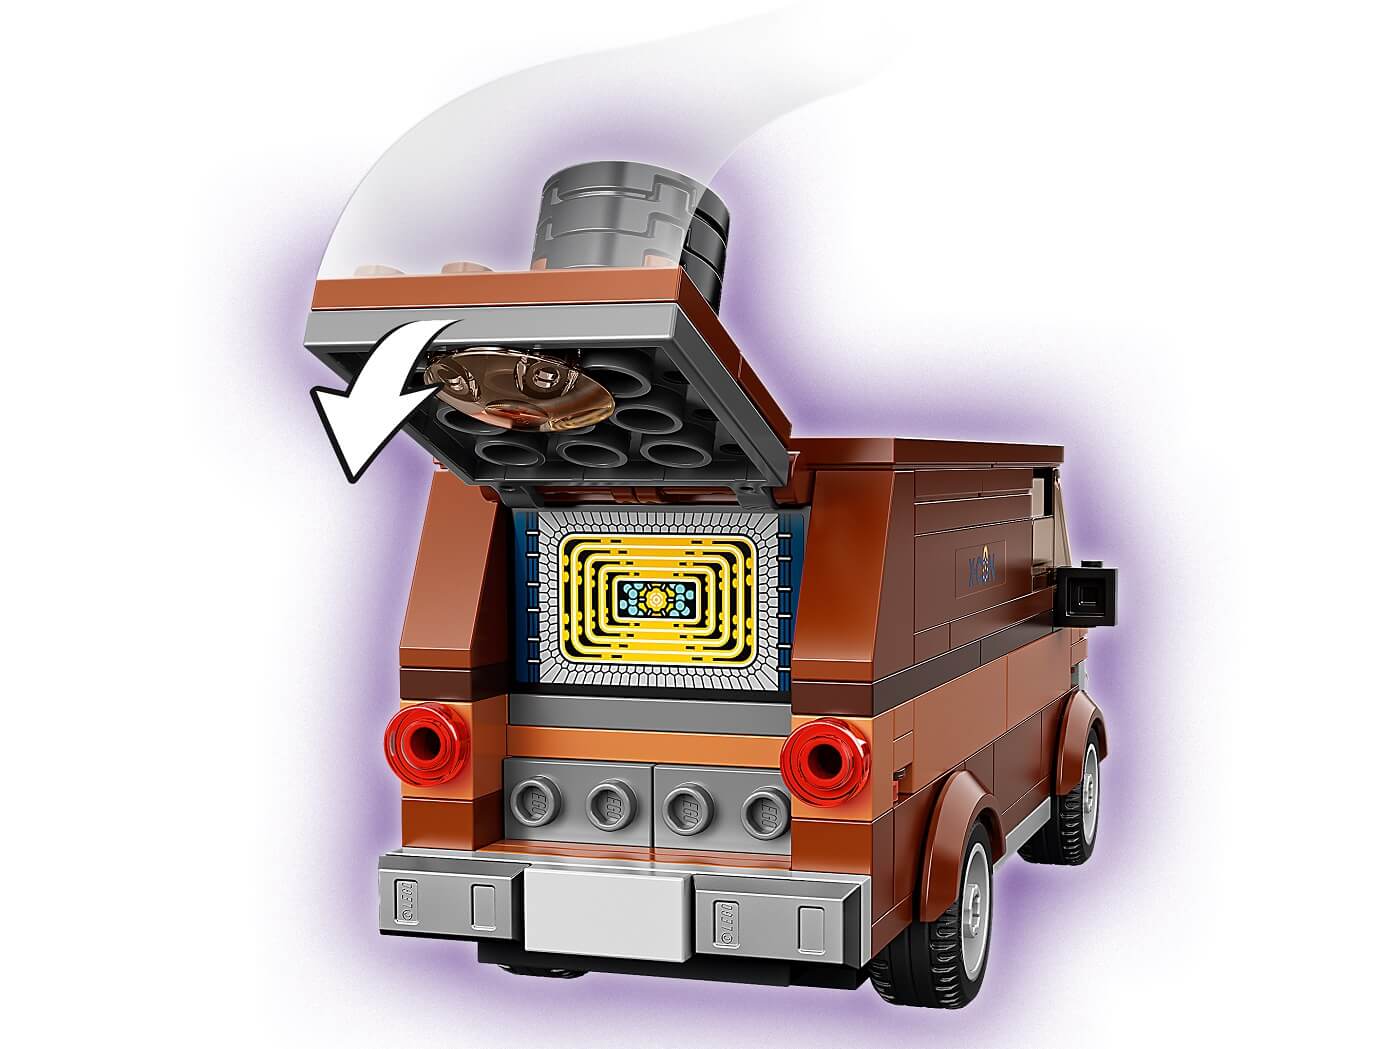 The Infinitity Saga Vengadores Batalla Final de Endgame ( Lego 76192 ) imagen e